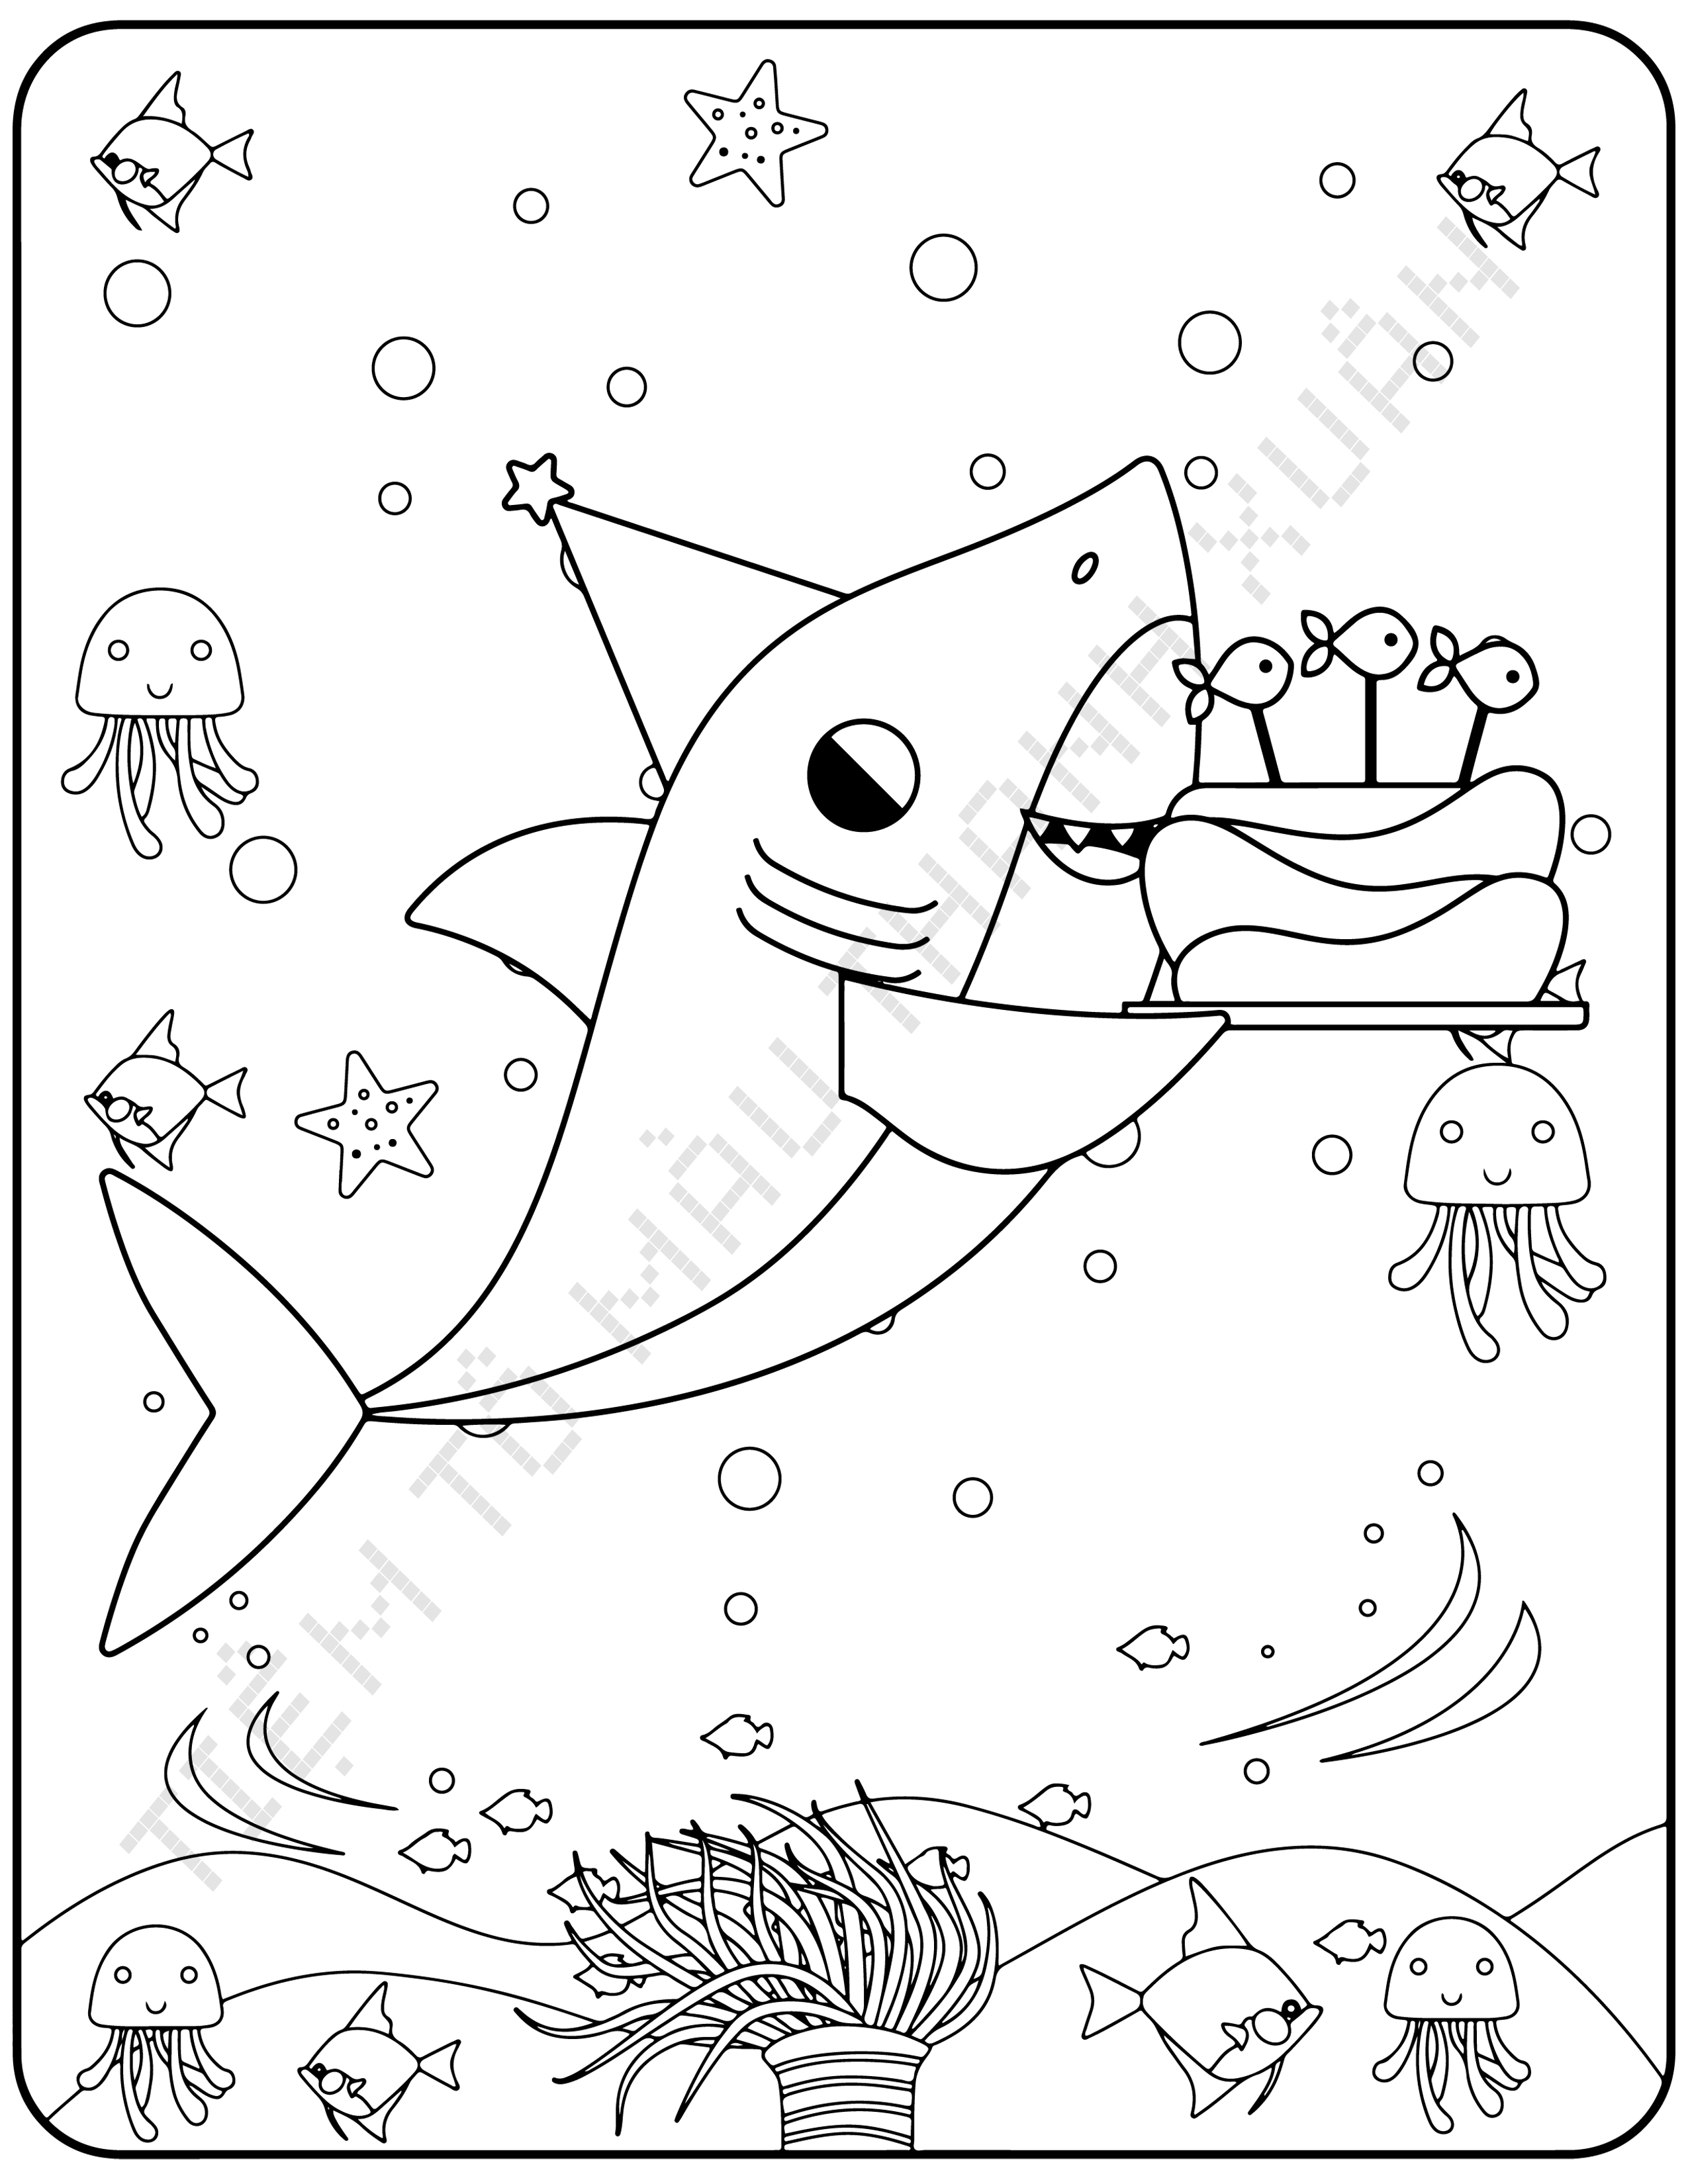 Khám đập phương pháp vẽ loài cá mập giản dị và đơn giản nhất cho những người mới nhất chính thức học tập vẽ